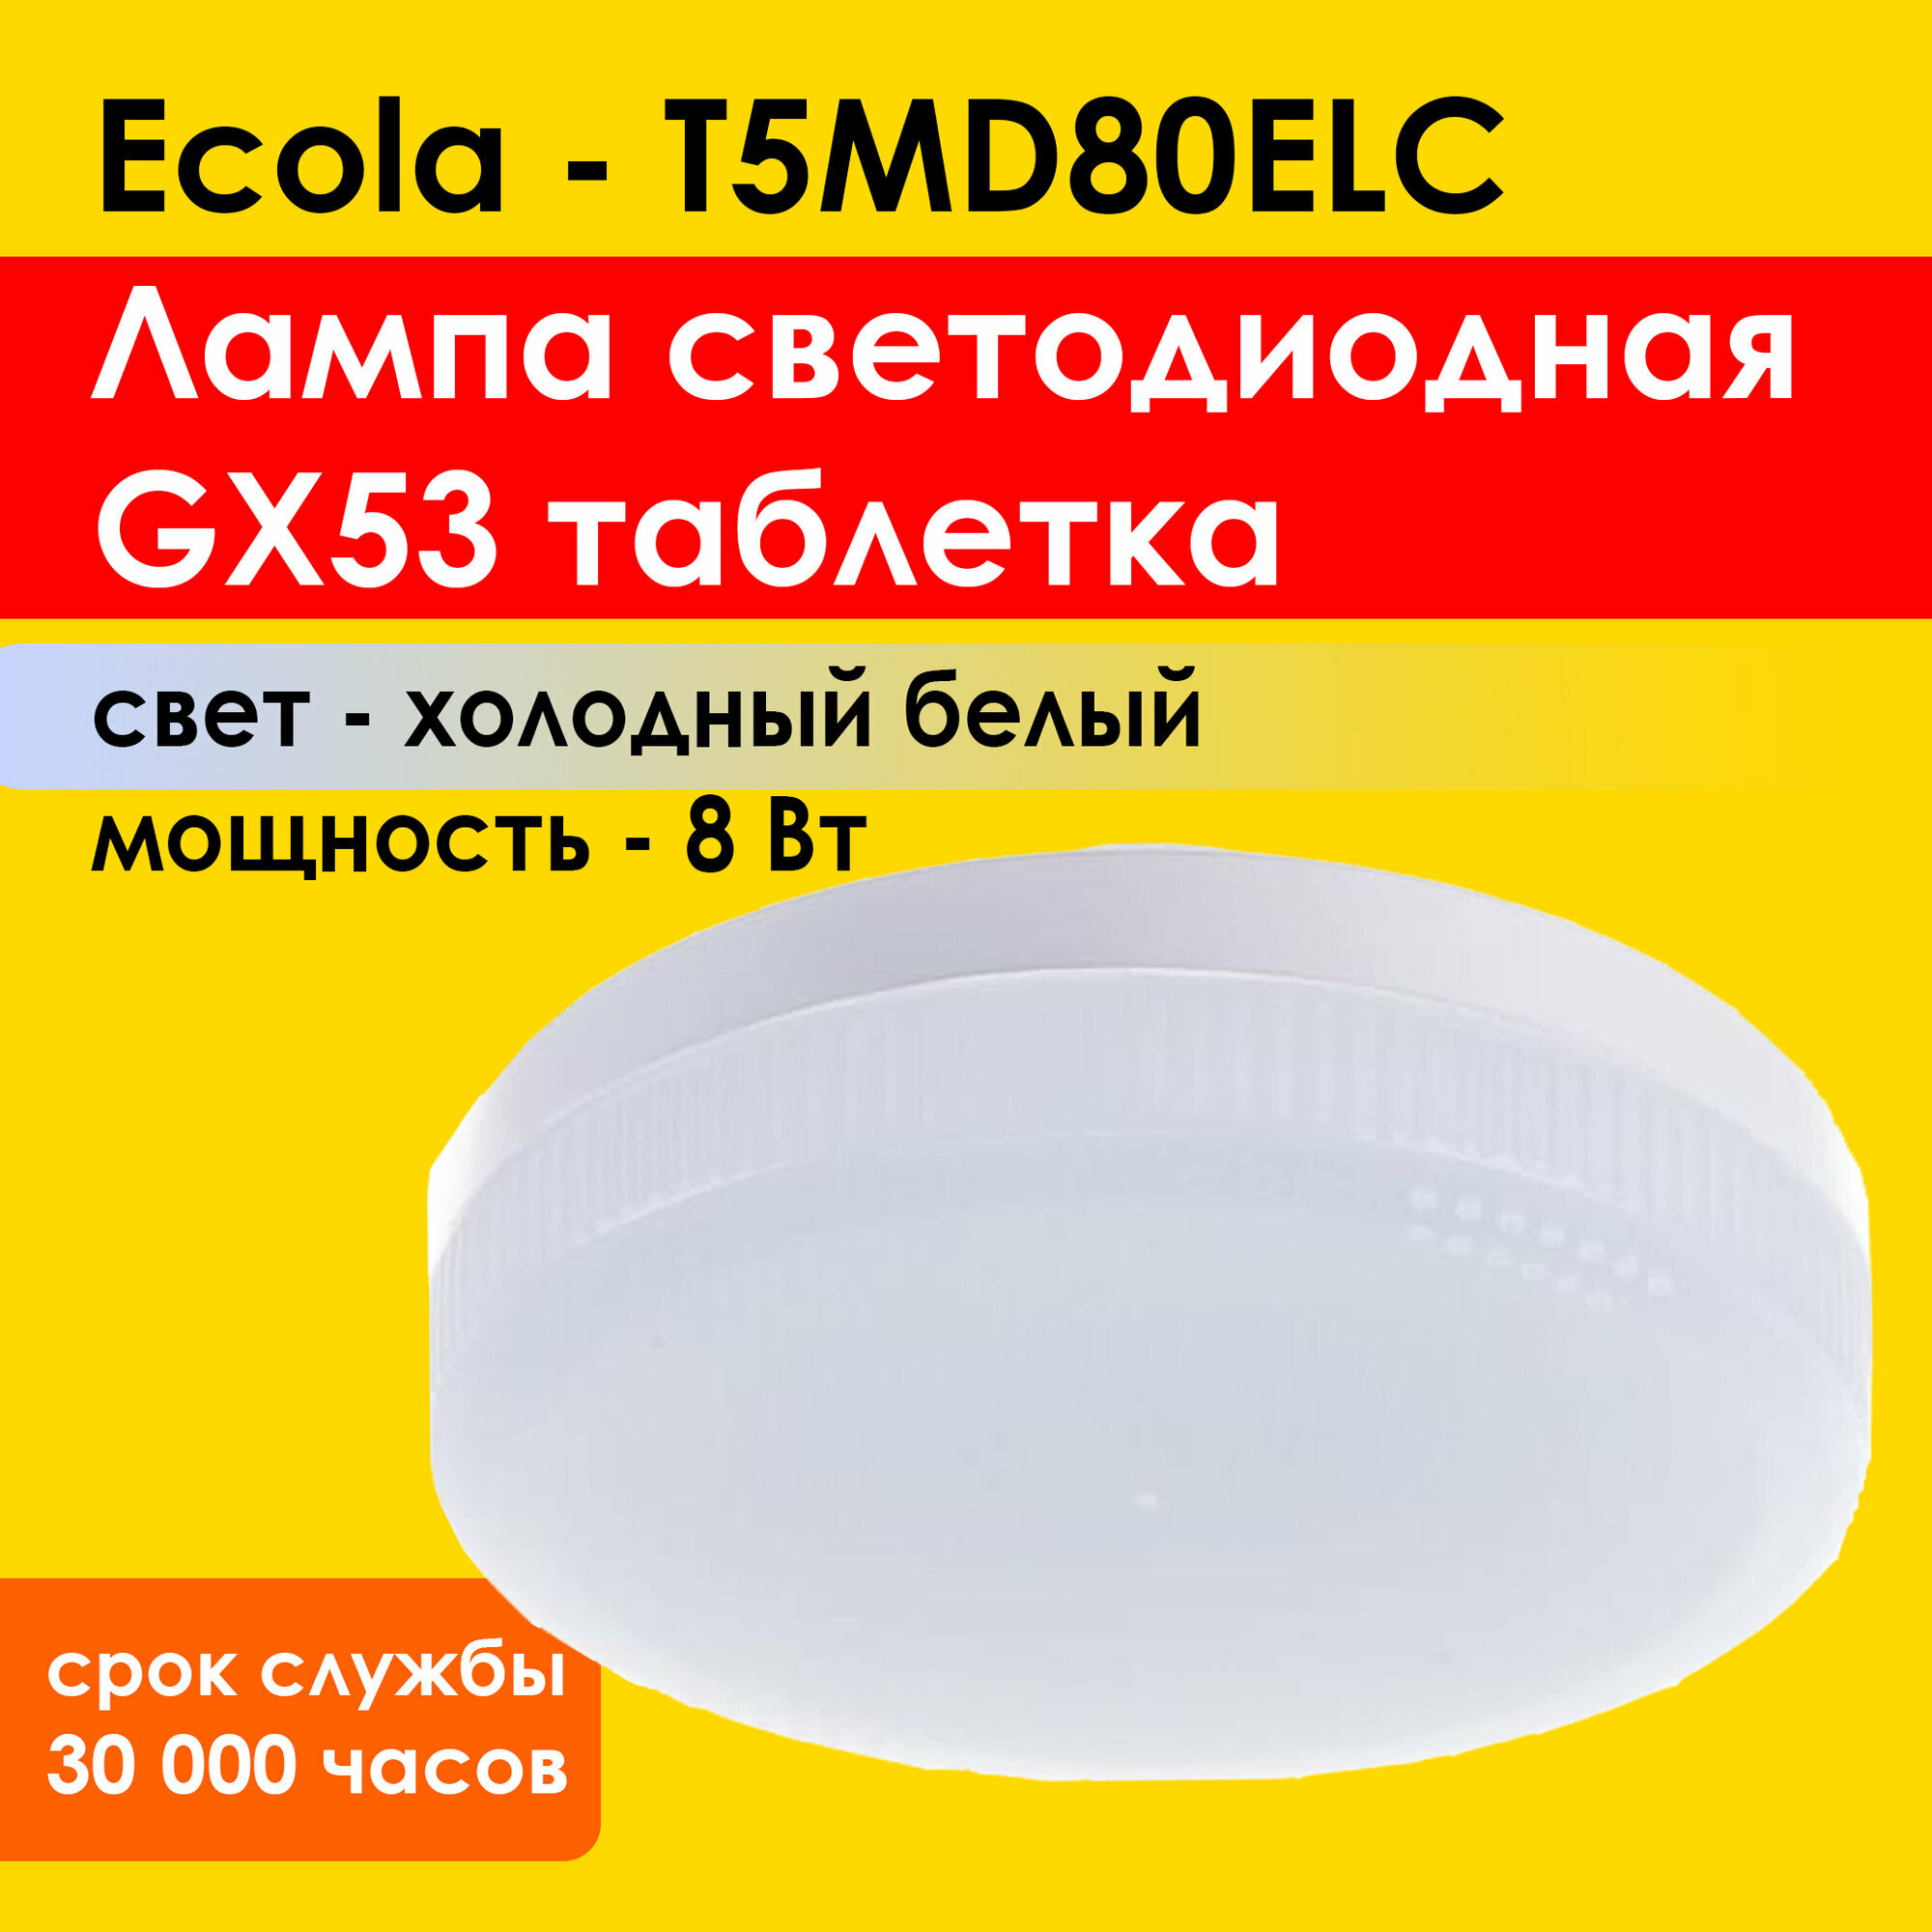 Лампа светодиодная для натяжных потолков Ecola Light GX53 LED 8,0W Tablet 220V 6400K 27x75 холодный яркий белый свет (T5MD80ELC)